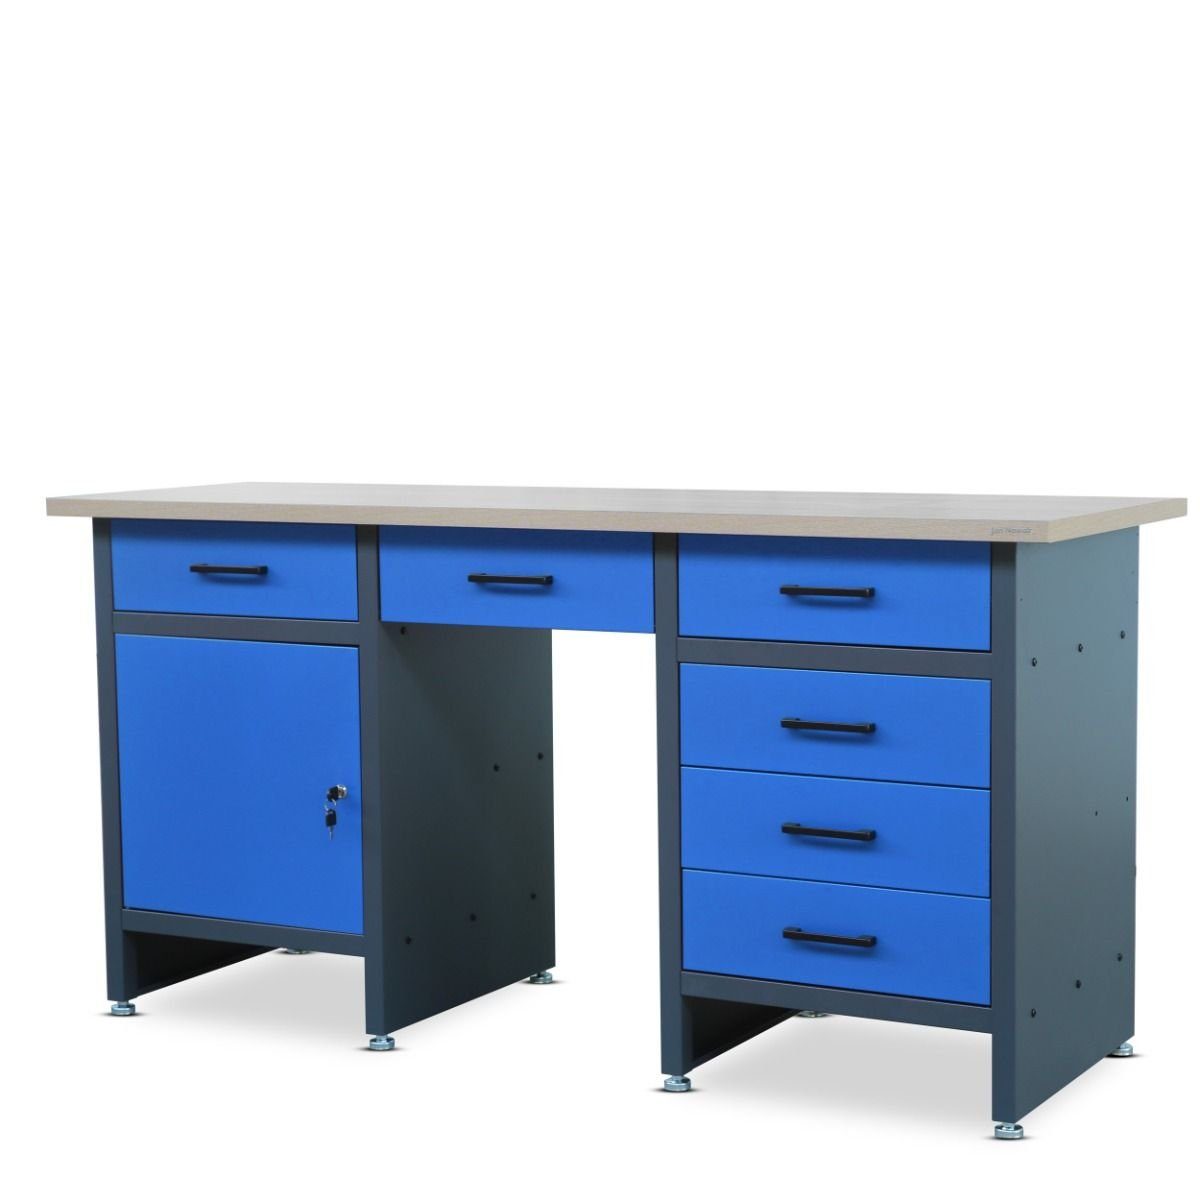 Holzplatte Jan anthrazit-blau; 85x170x60 Werktisch Werkbank anthrazit-blau; Nowak 85x170x60, Werktisch Werkbank Werkbank